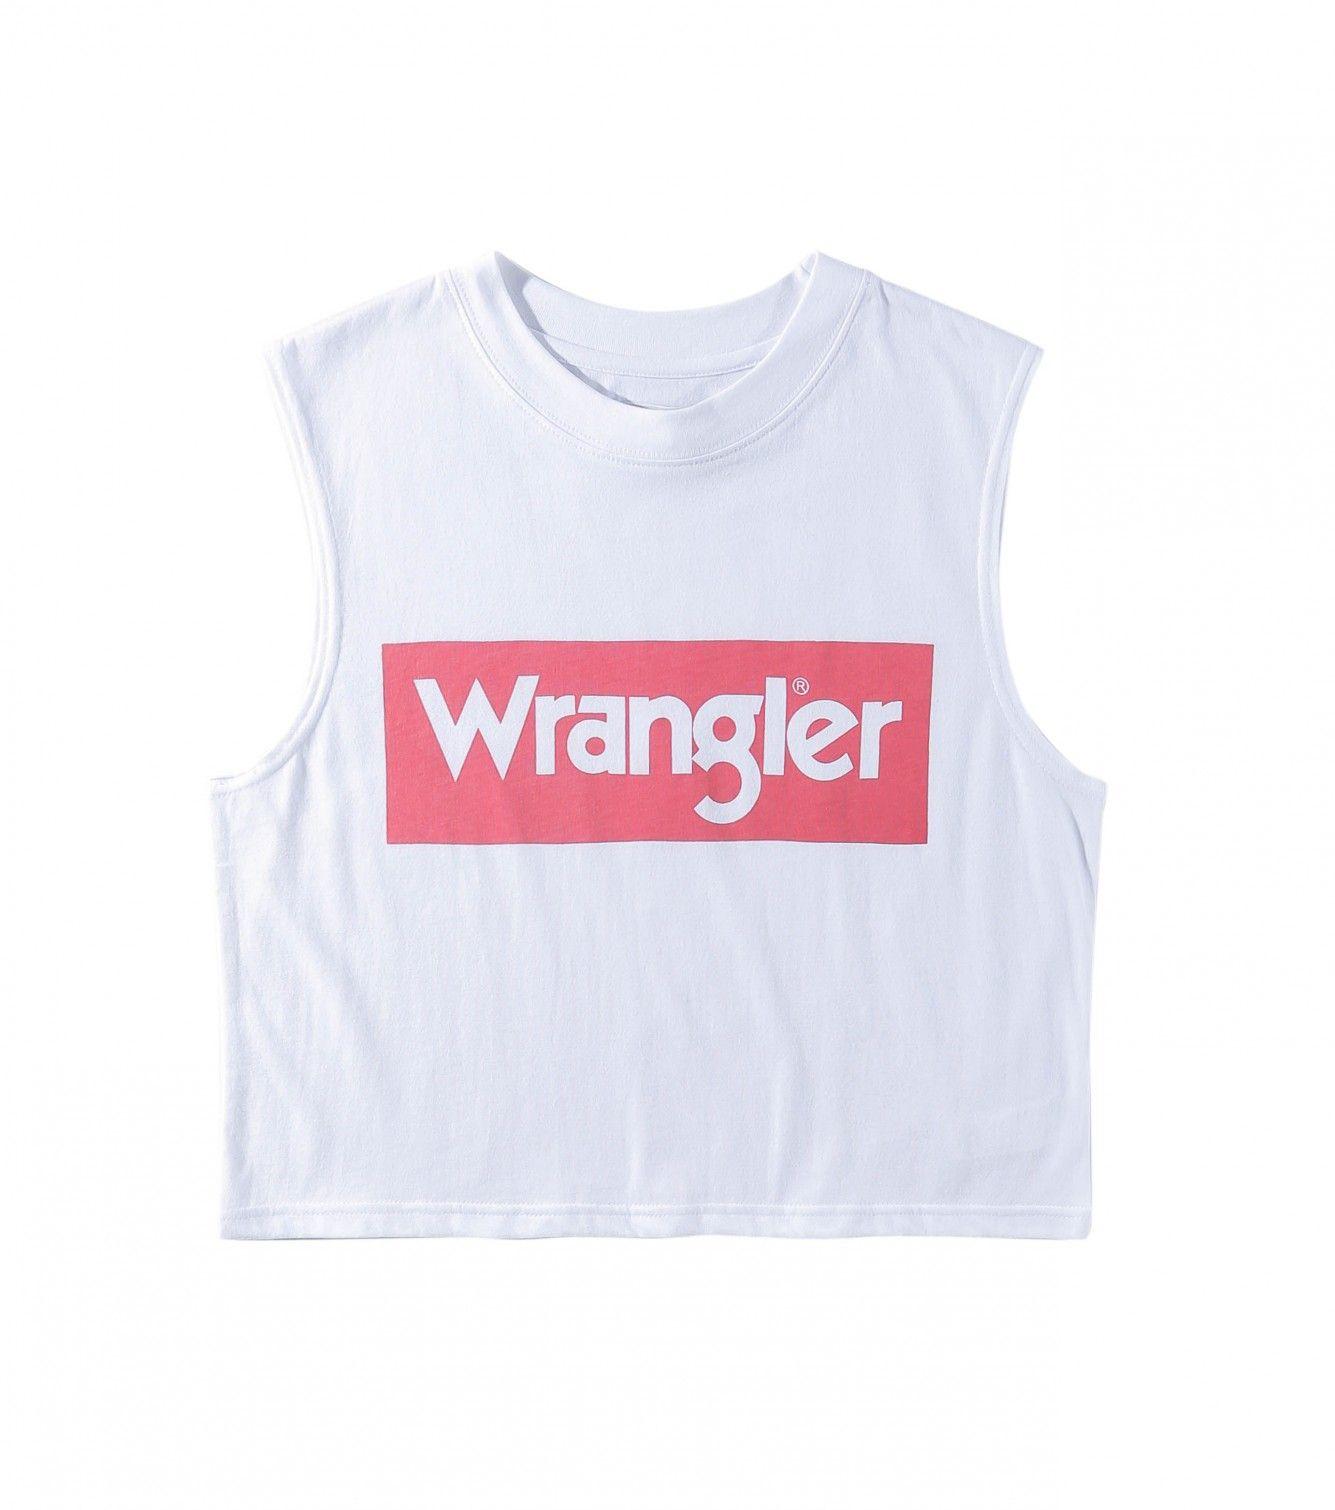 Wrangler Logo - LogoDix